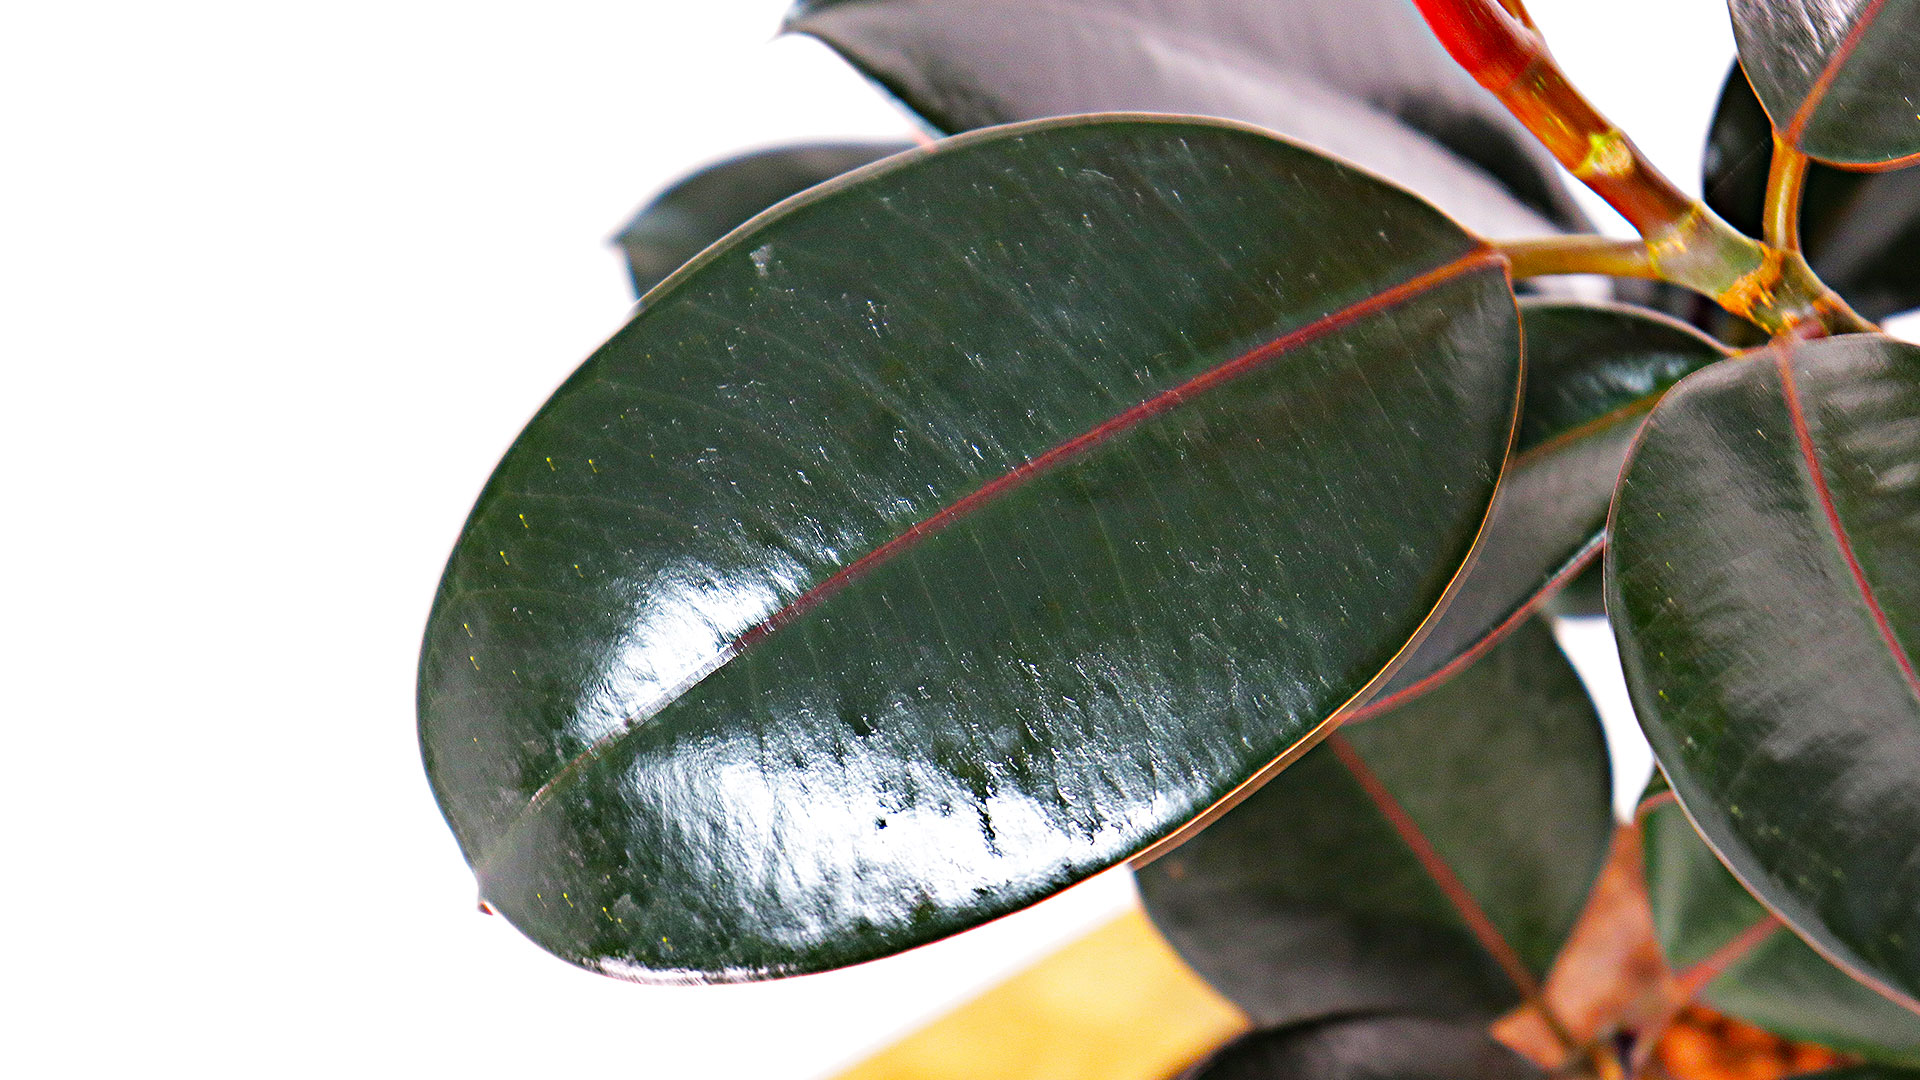 ハイドロカルチャーのフィカスバーガンディの葉っぱの画像